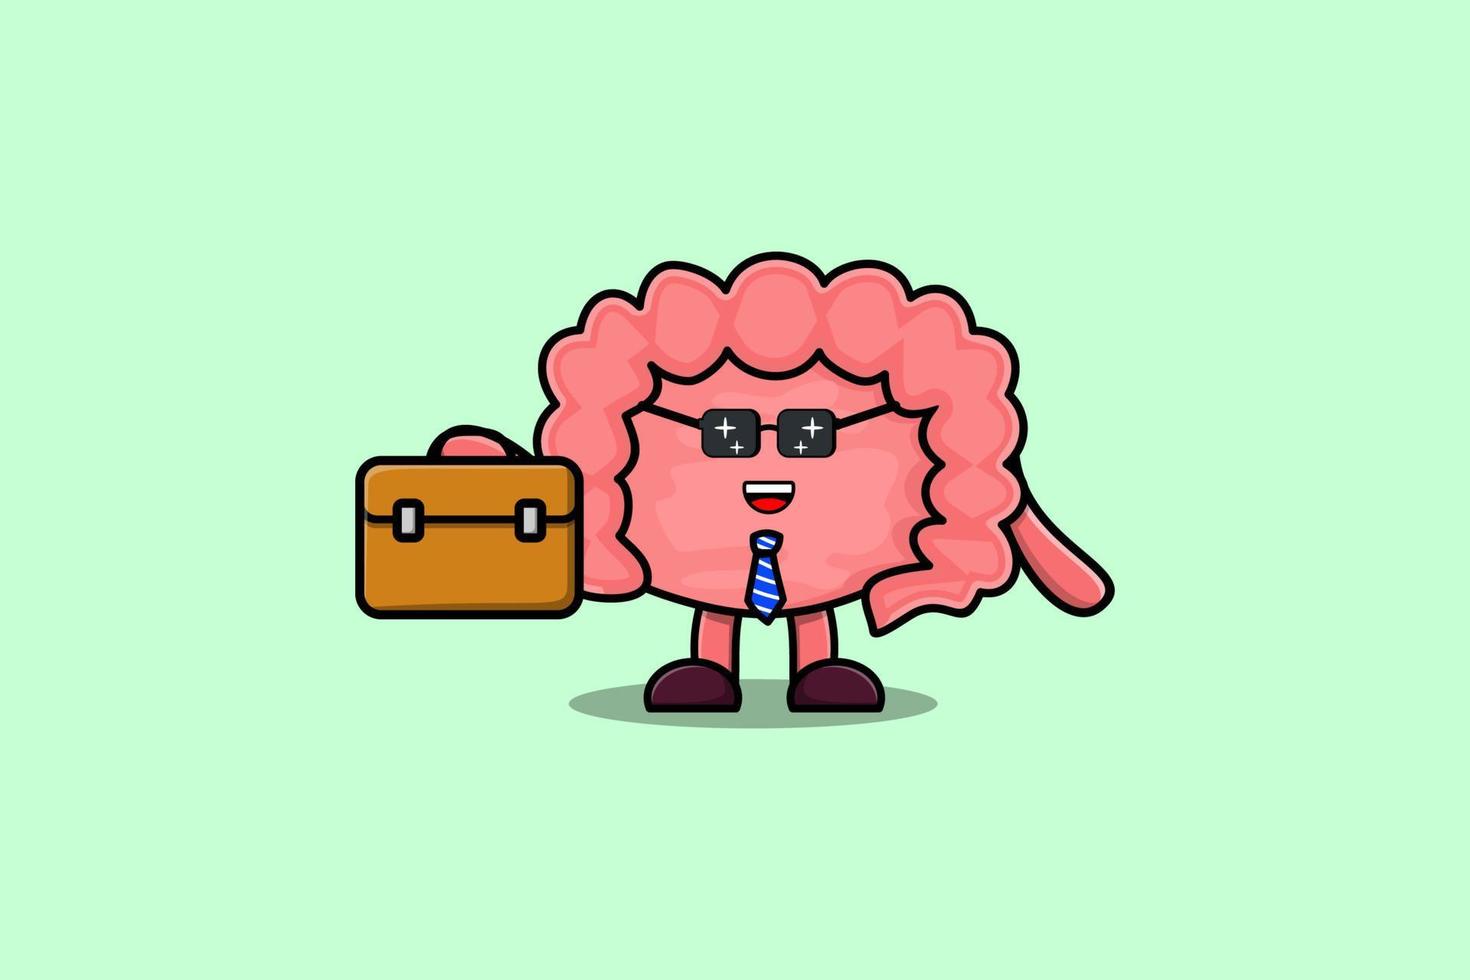 personnage de dessin animé mignon intestin tenant une valise vecteur